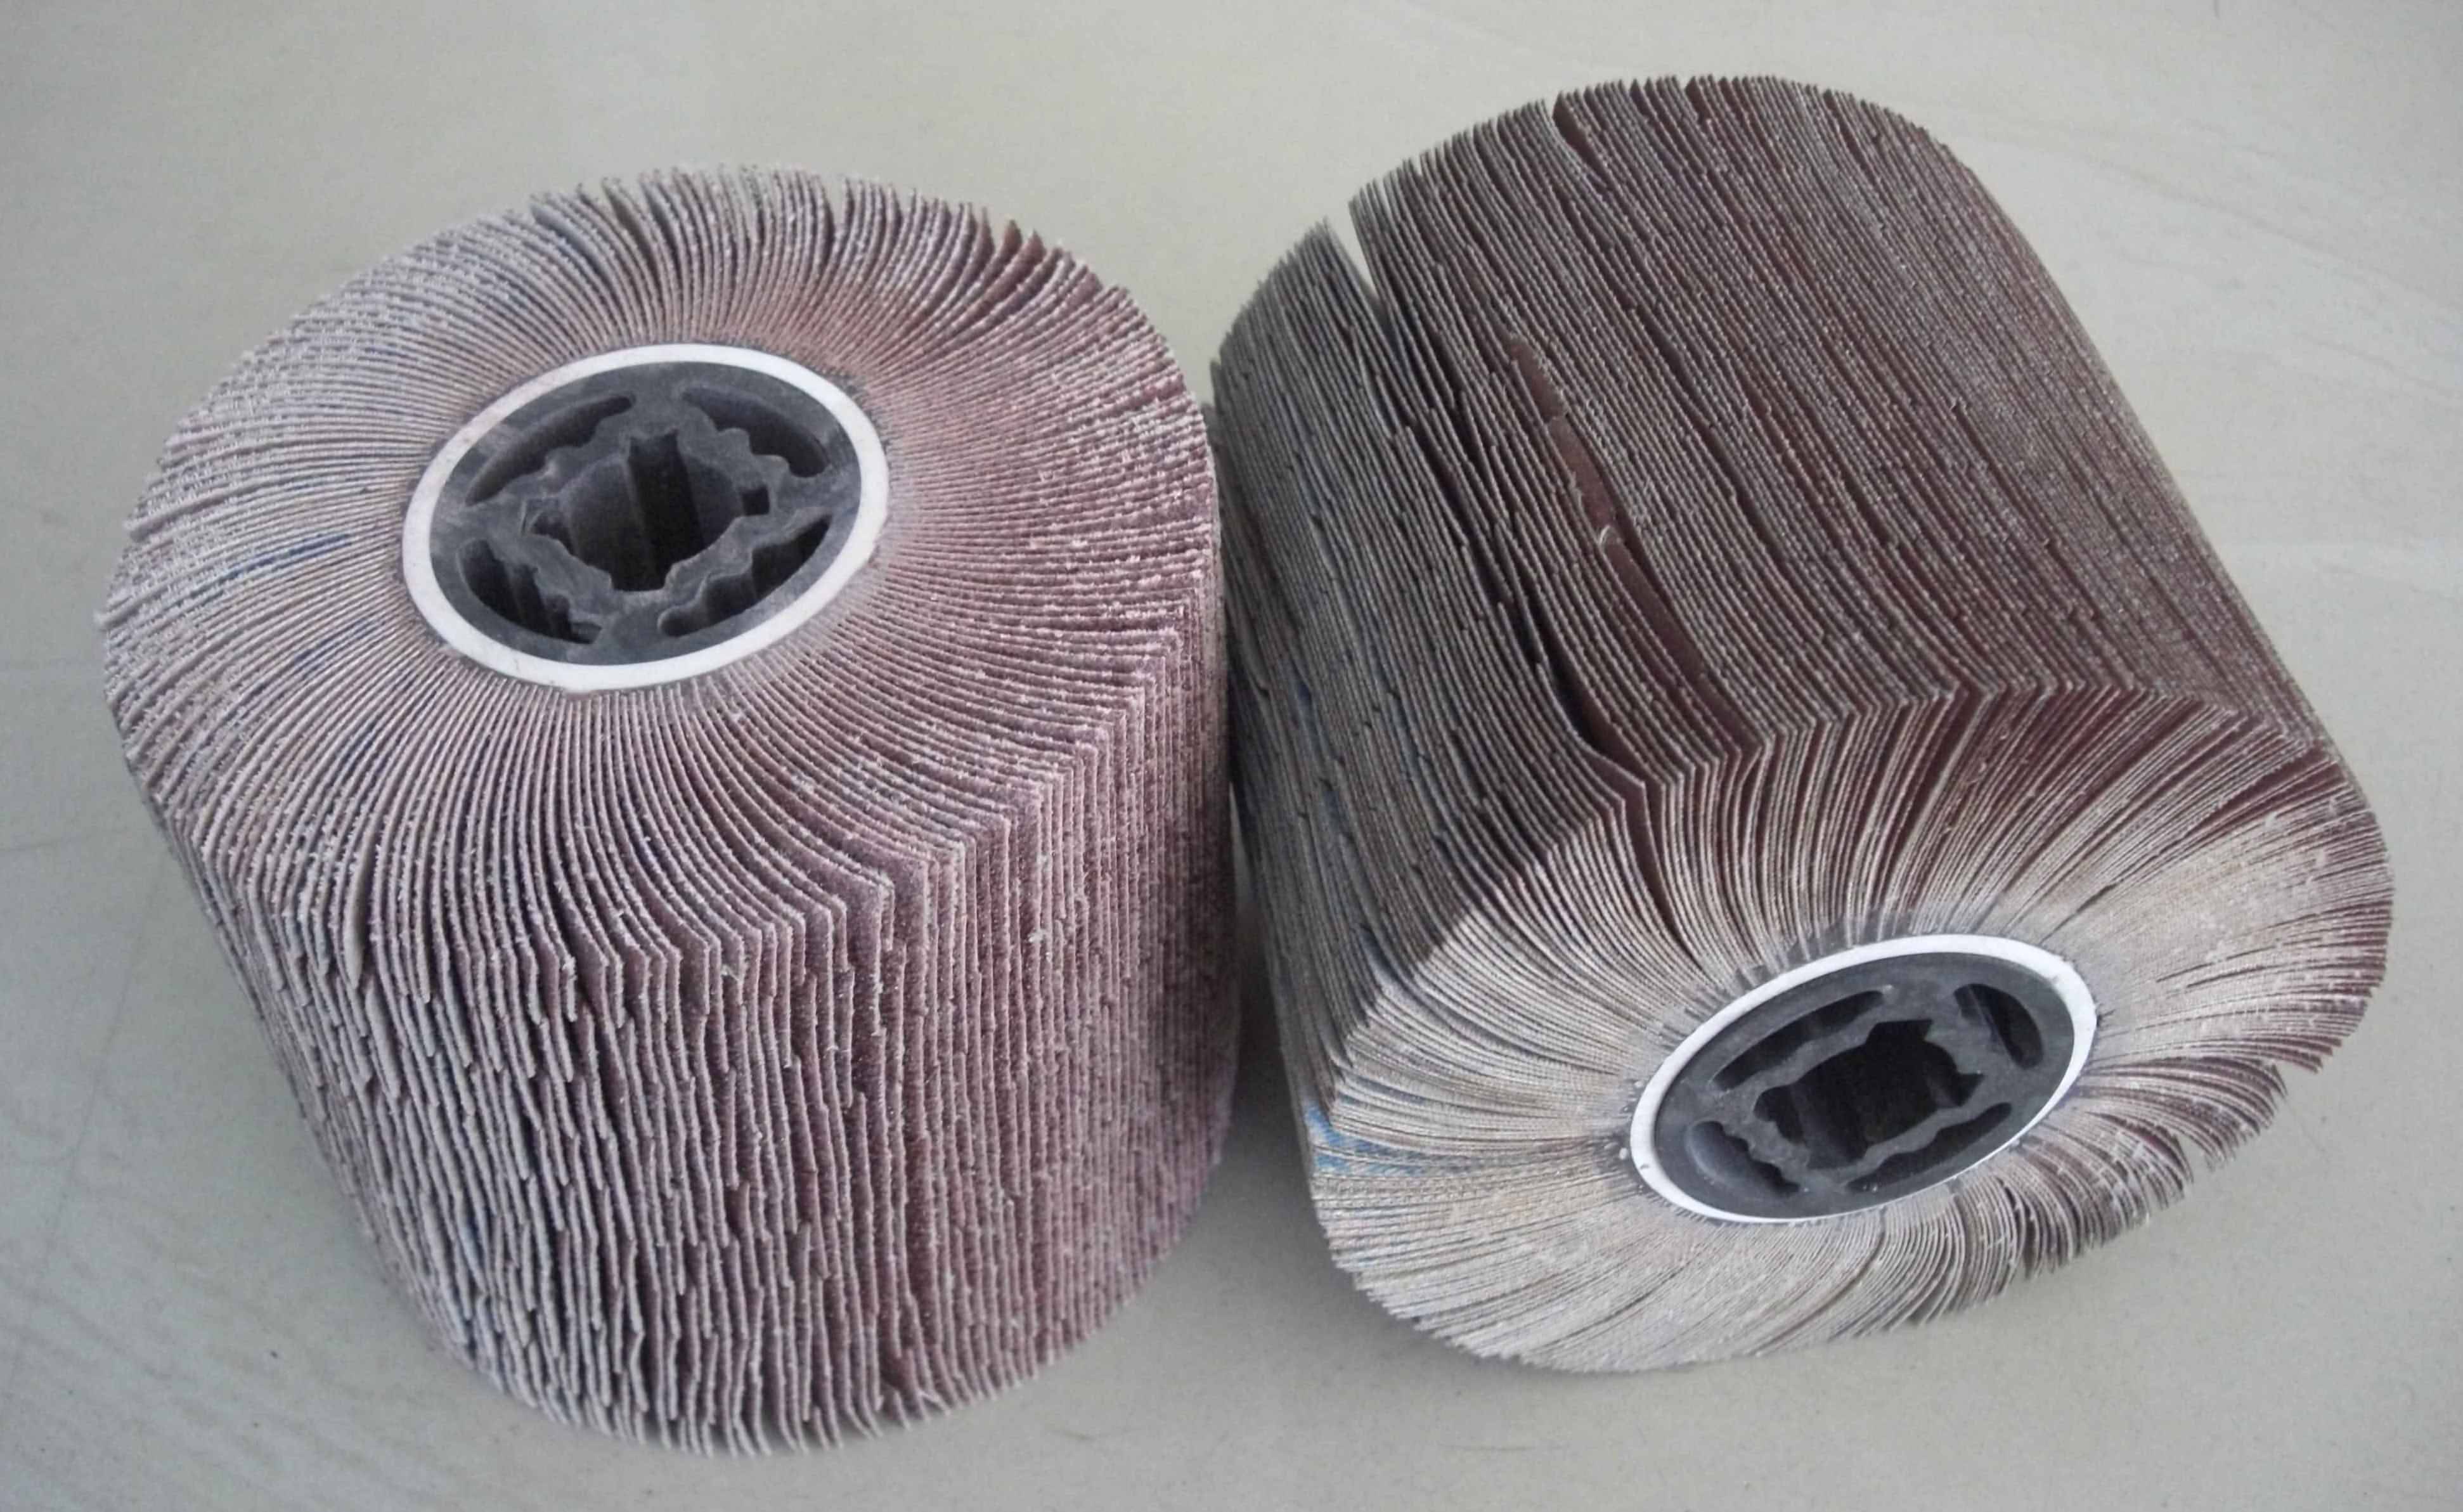 生产各类不织布尼龙研磨系列产品,包括不织布轮(又称尼龙轮,抛光轮